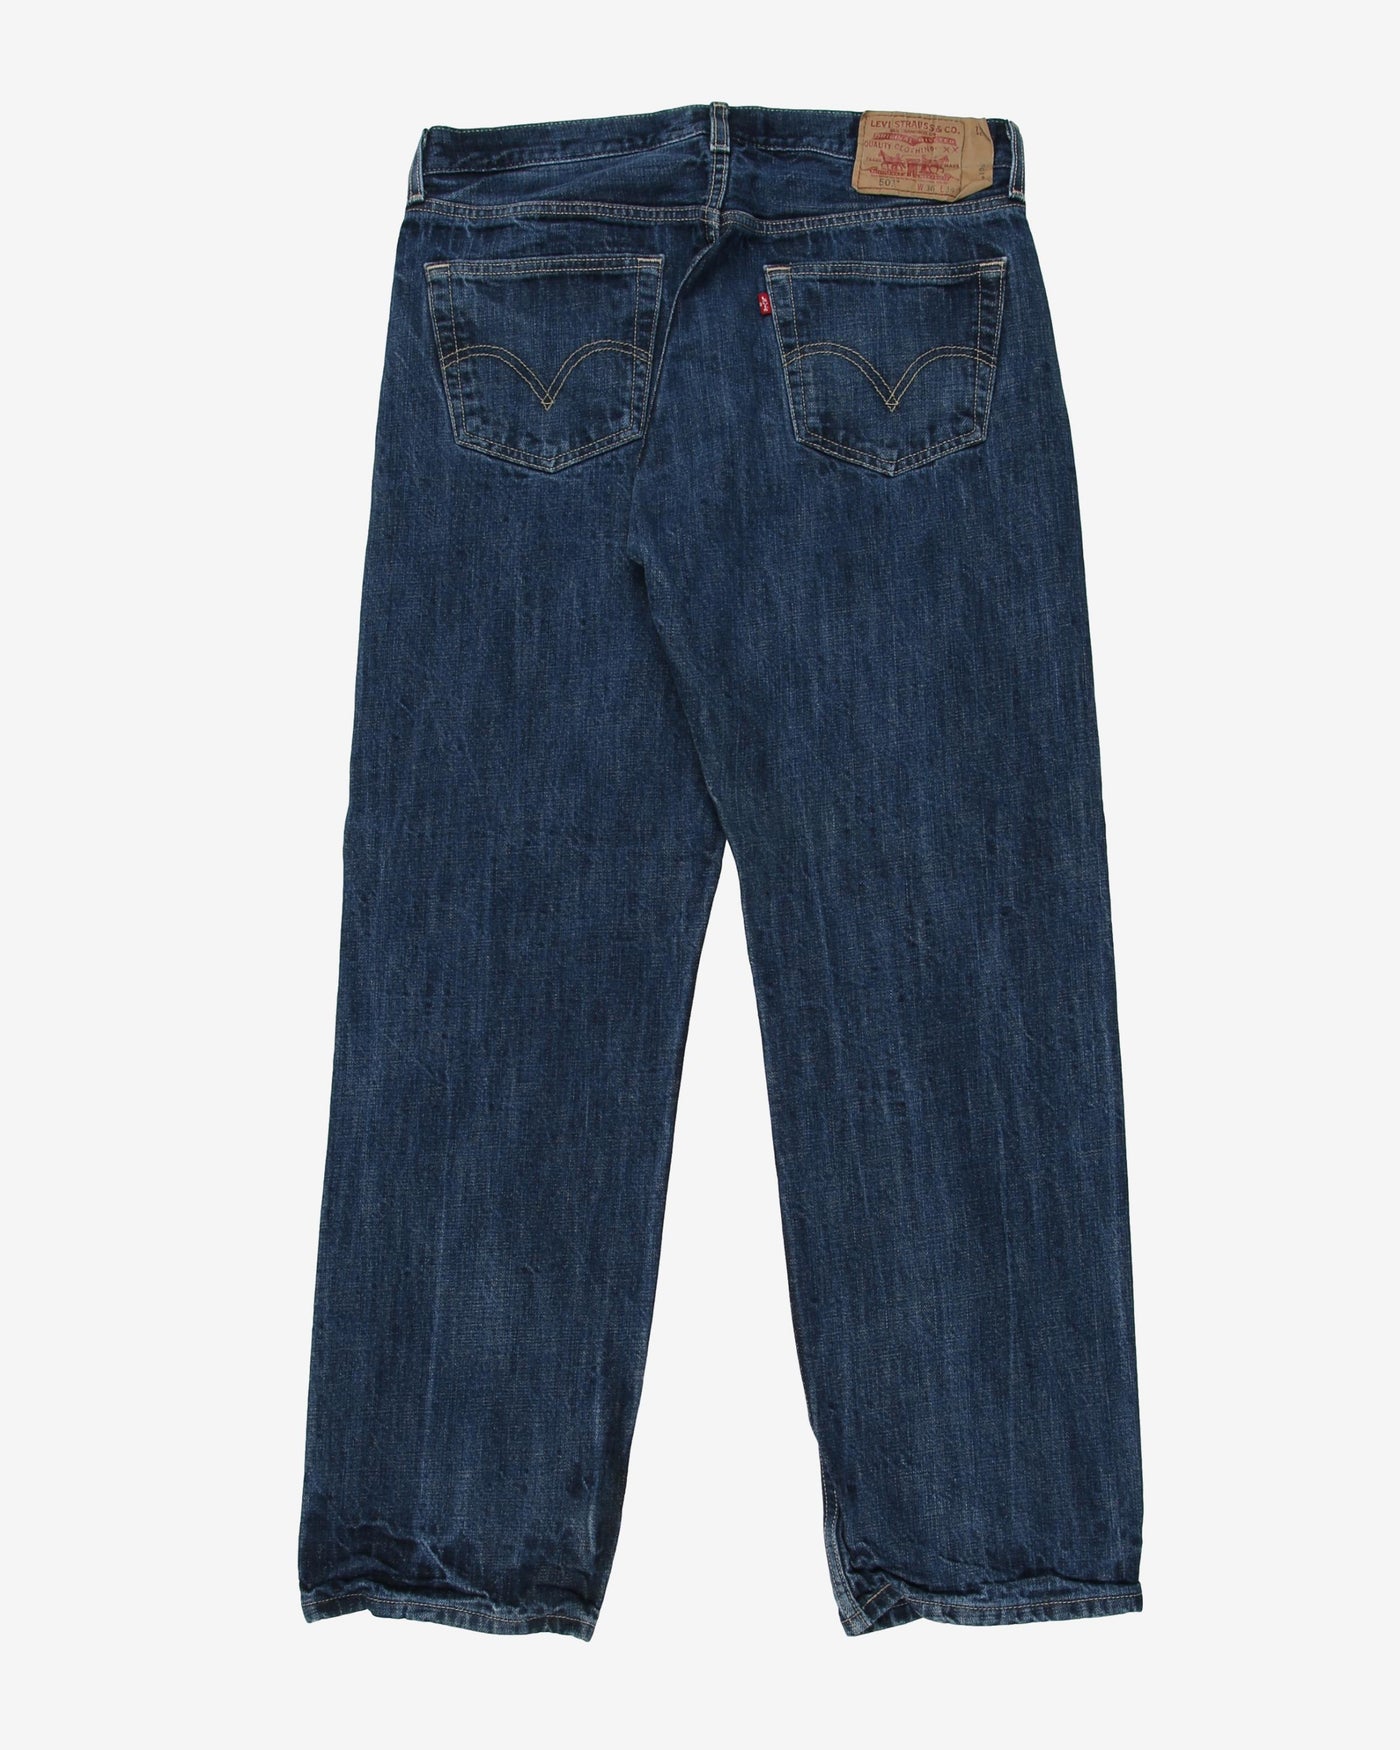 Levi's 501 Denim Blue Jeans - W33 L28